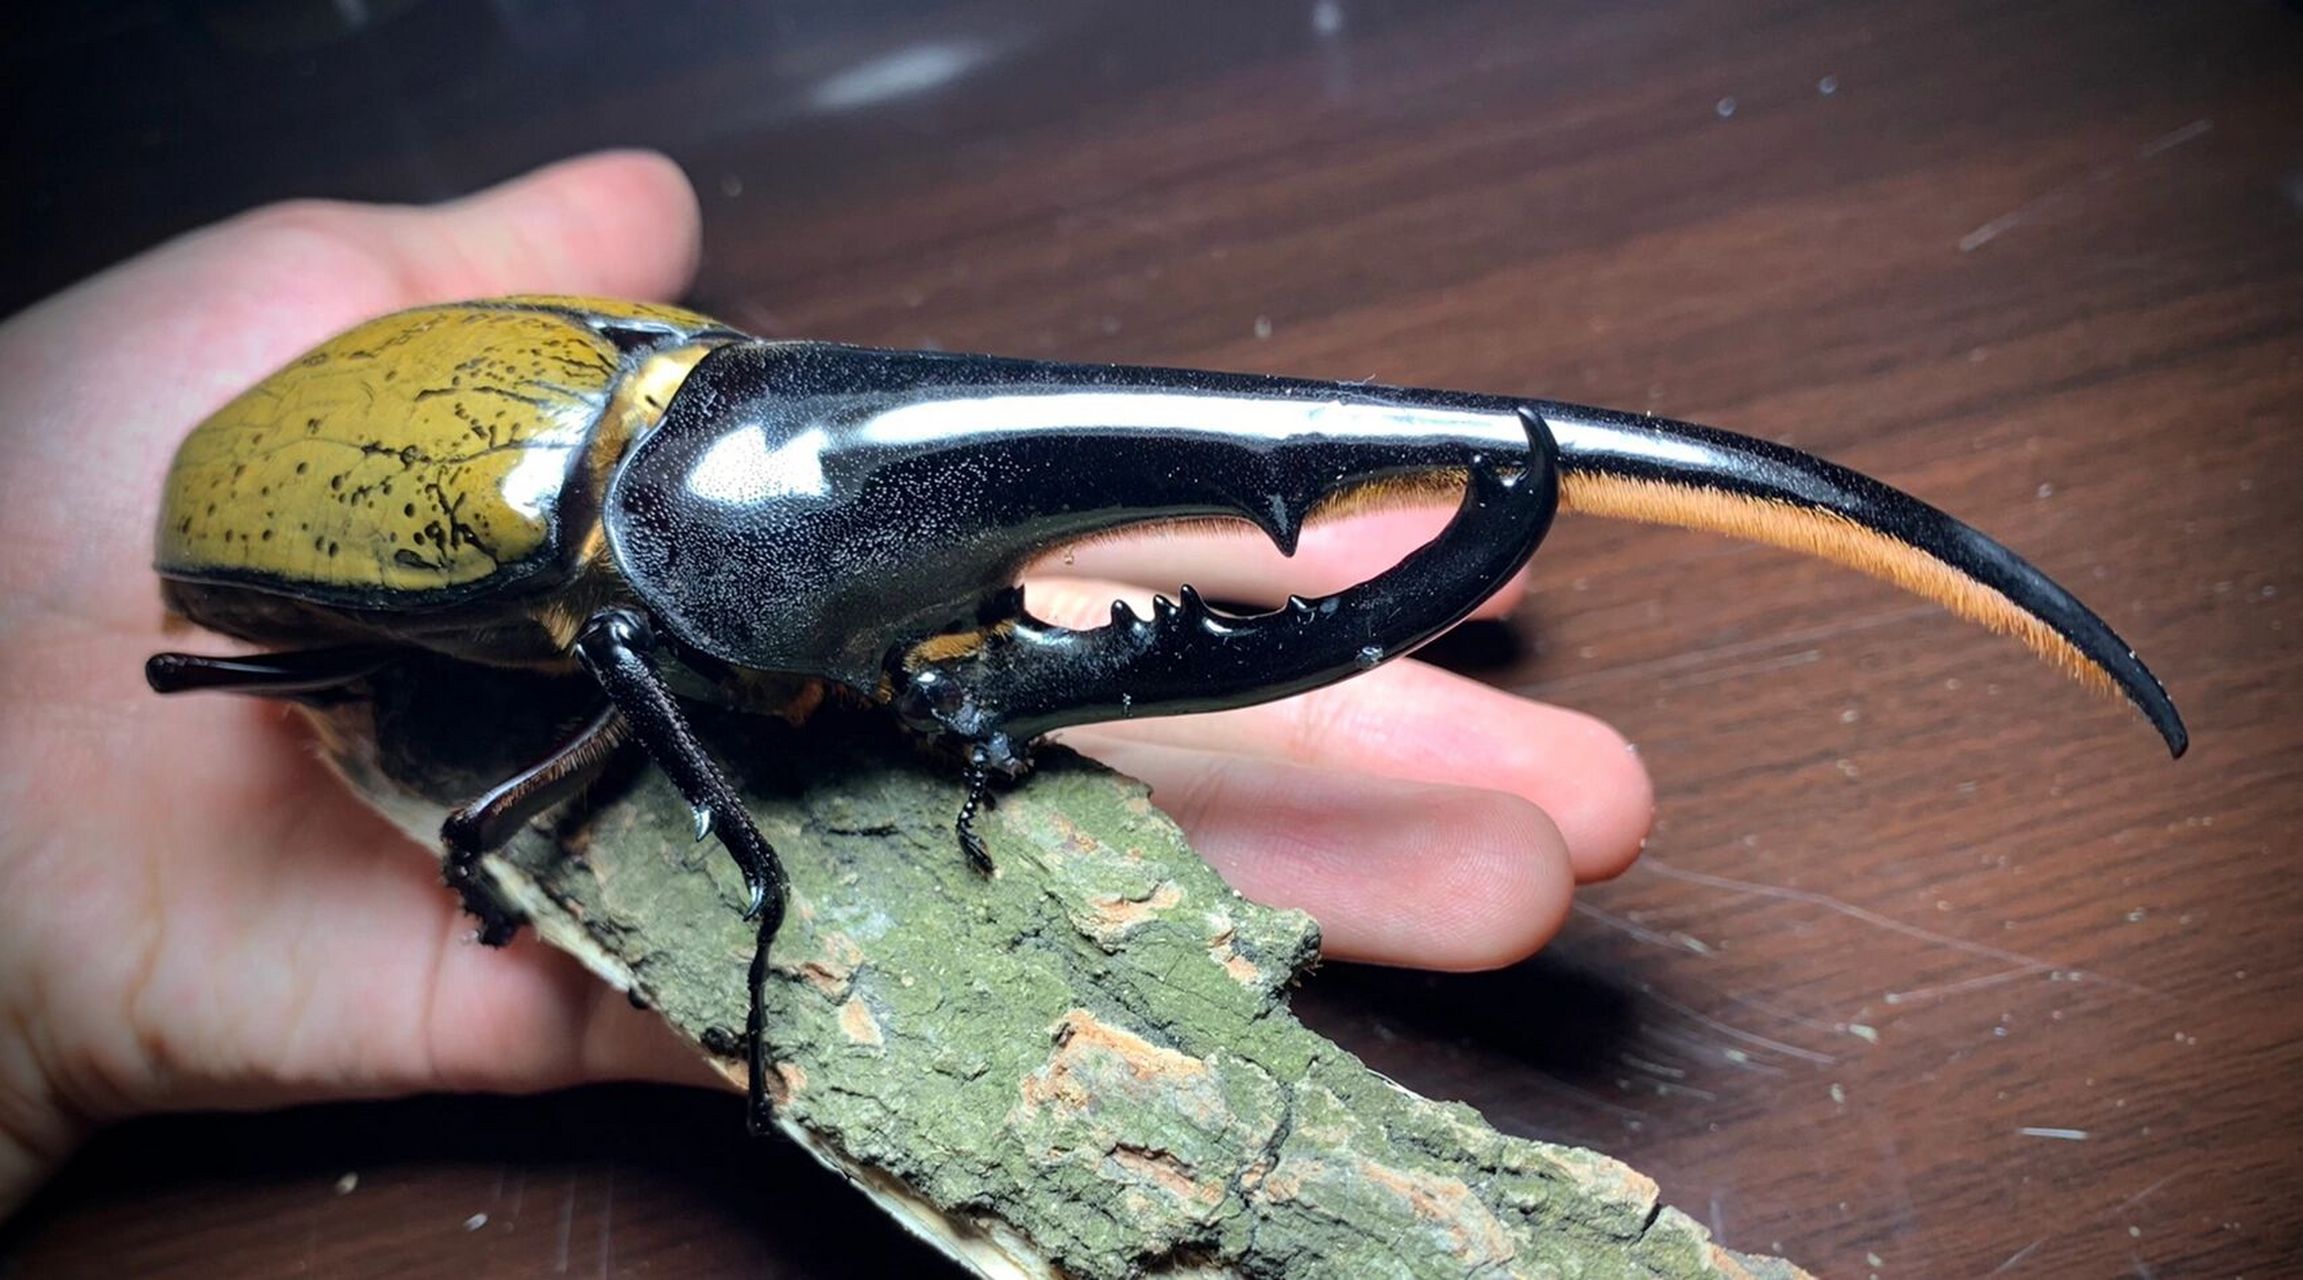 金甲巨人 长戟大兜虫,来自中南美洲热带雨林的巨型甲虫, 是世界上最长